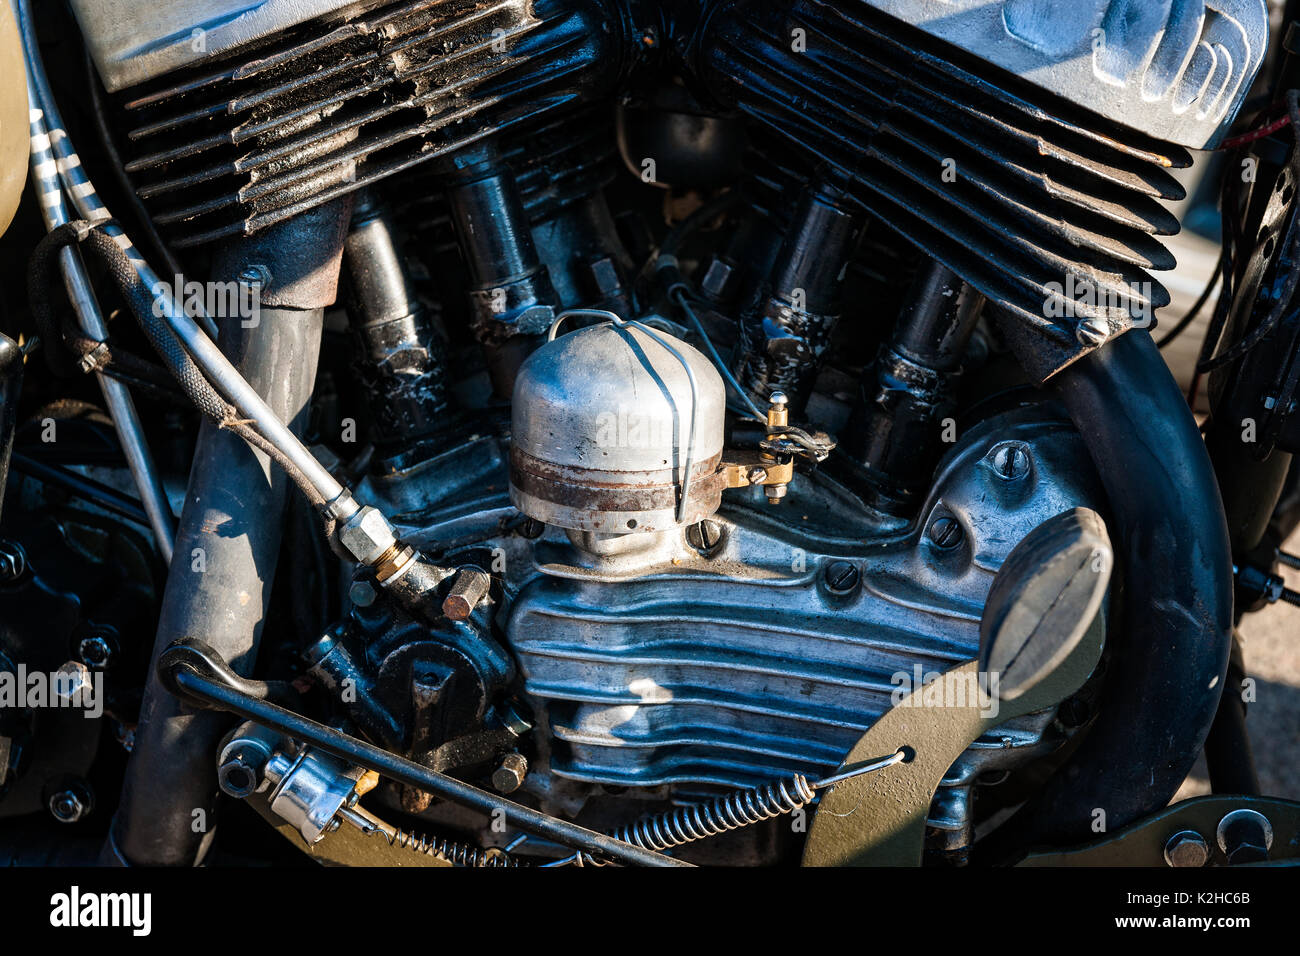 Details der Motor mit einem Oldtimer Motorrad. Weiße Farbe Zylinder  ratiators, Guss Rohre, Drähte und Gelenke Stockfotografie - Alamy